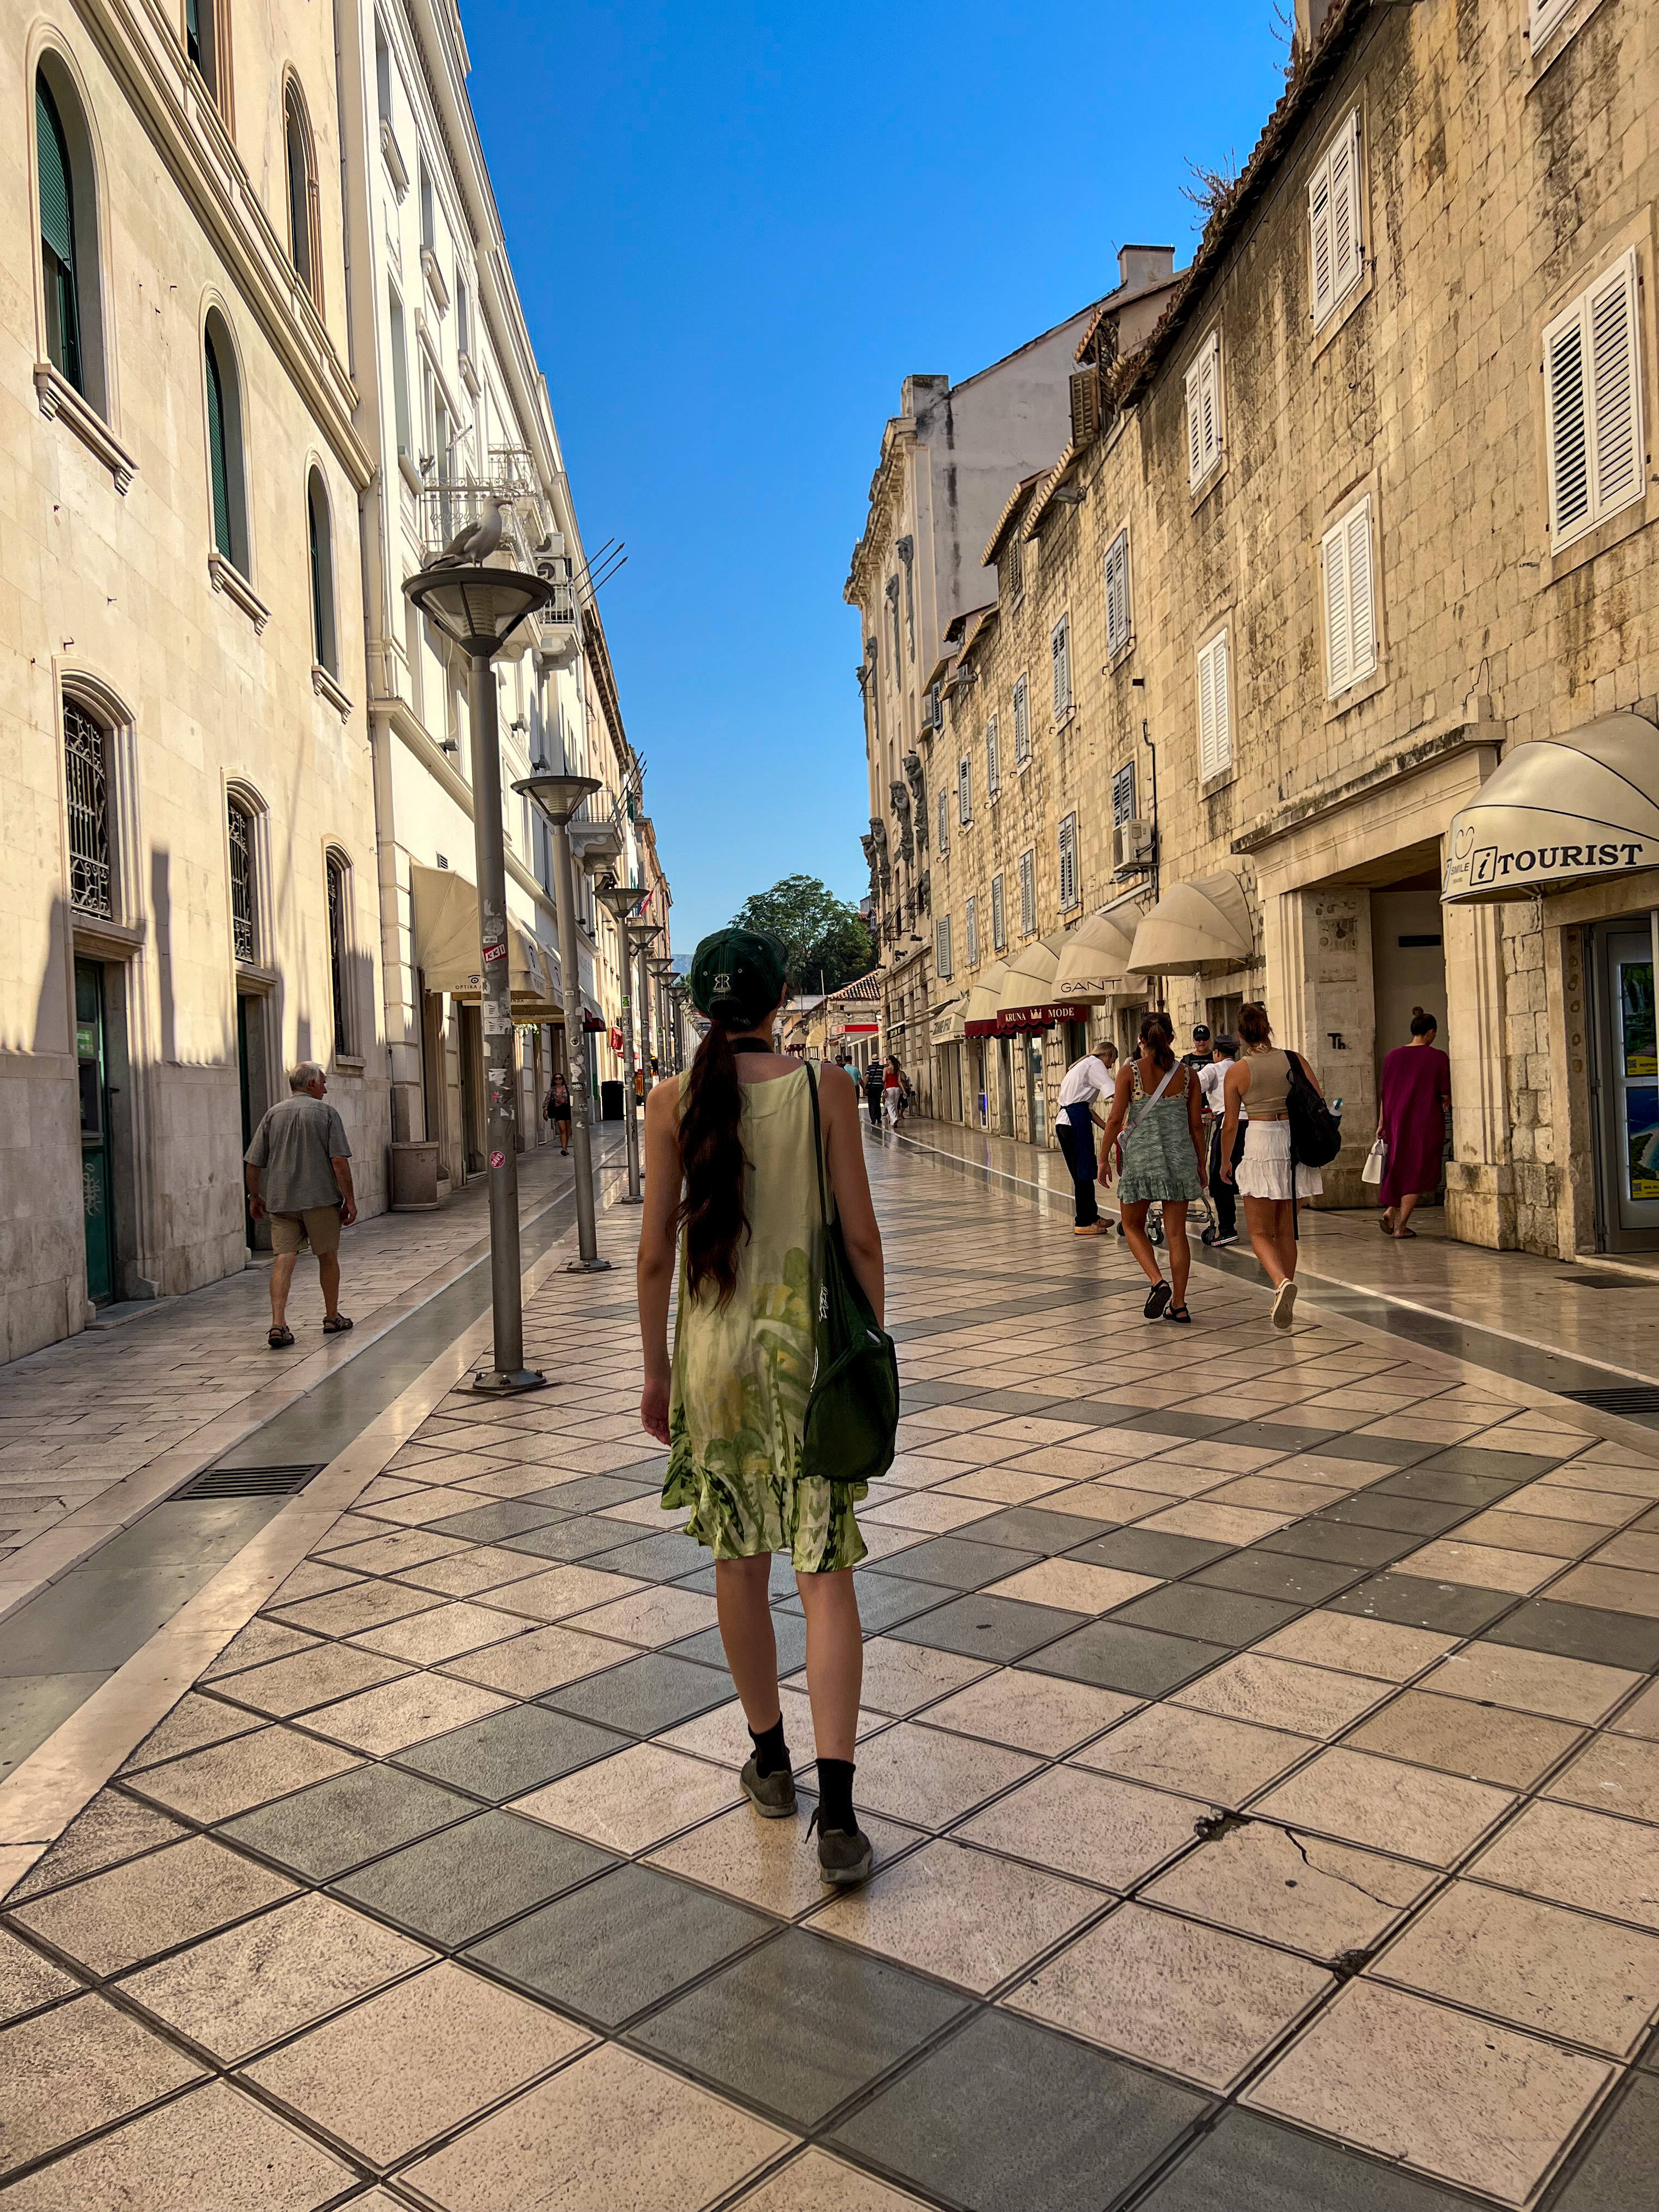 Split-Croácia :: Eu Fui e Recomendo